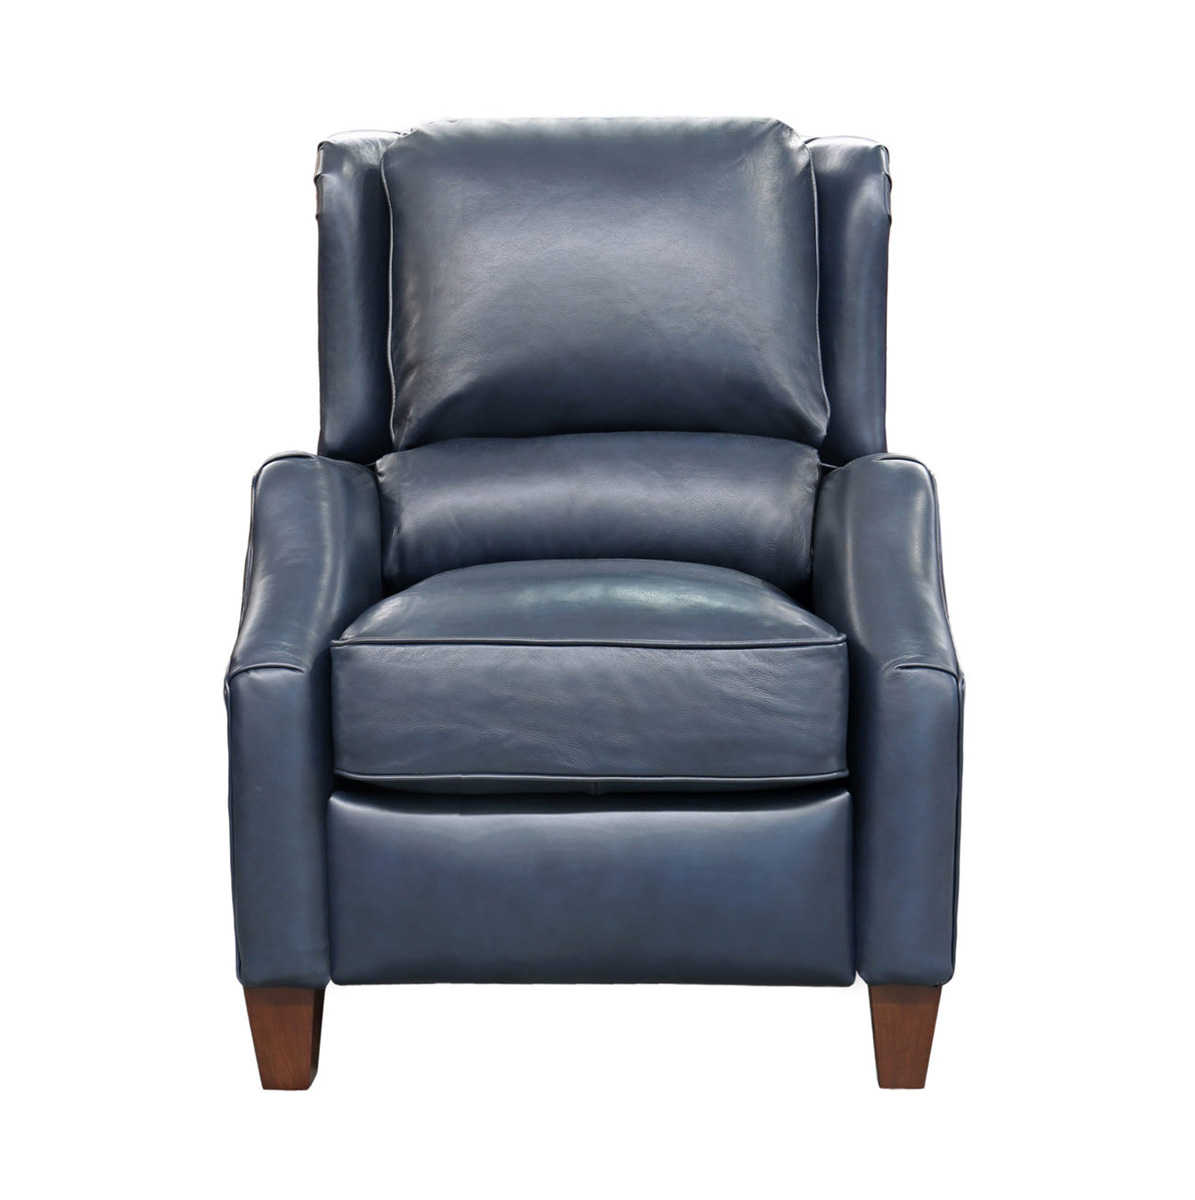 Barcalounger Berkeley Recliner Chair - Shoreham Blue/All Leather